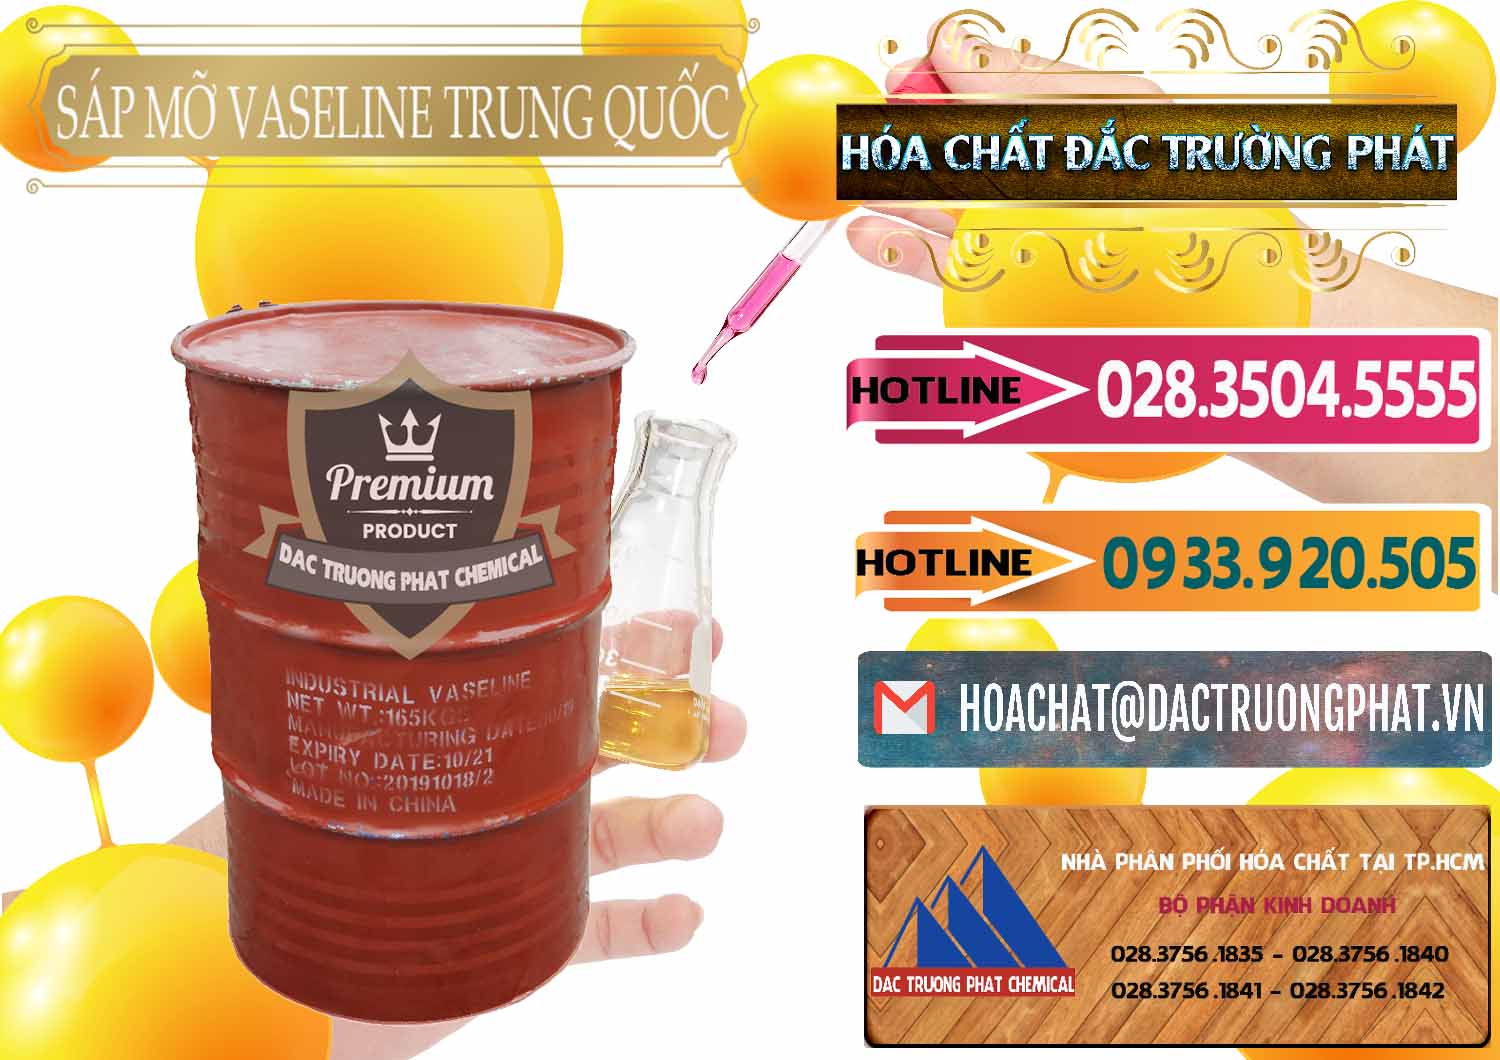 Đơn vị chuyên cung cấp - bán Sáp Mỡ Vaseline Trung Quốc China - 0122 - Công ty kinh doanh & cung cấp hóa chất tại TP.HCM - dactruongphat.vn